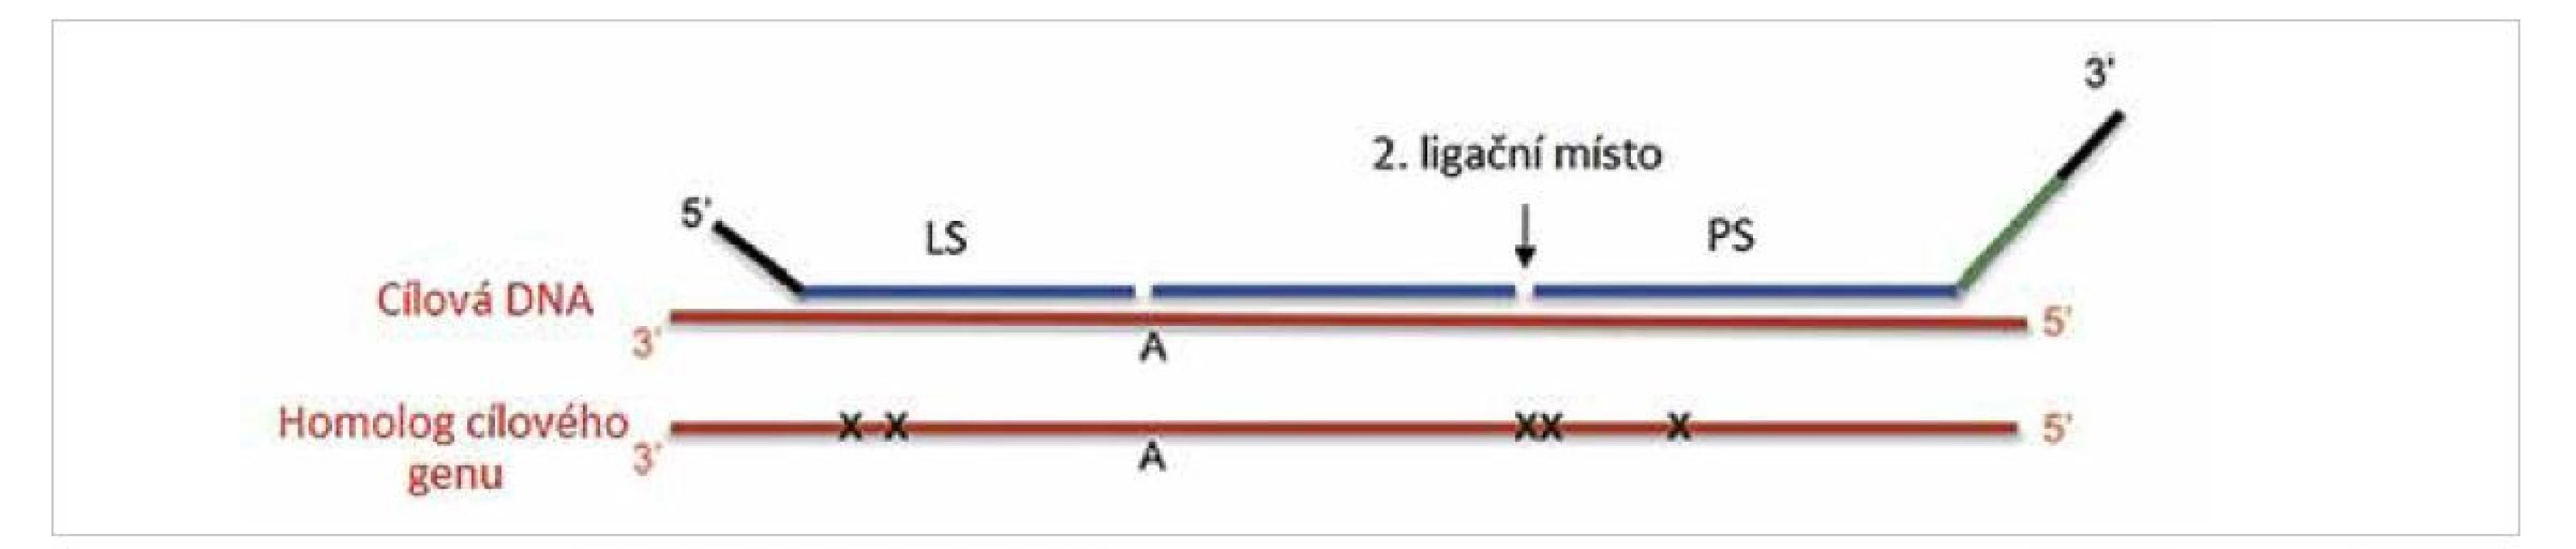 Využití dvou ligačního systému při detekce mutací (převzato z 2).